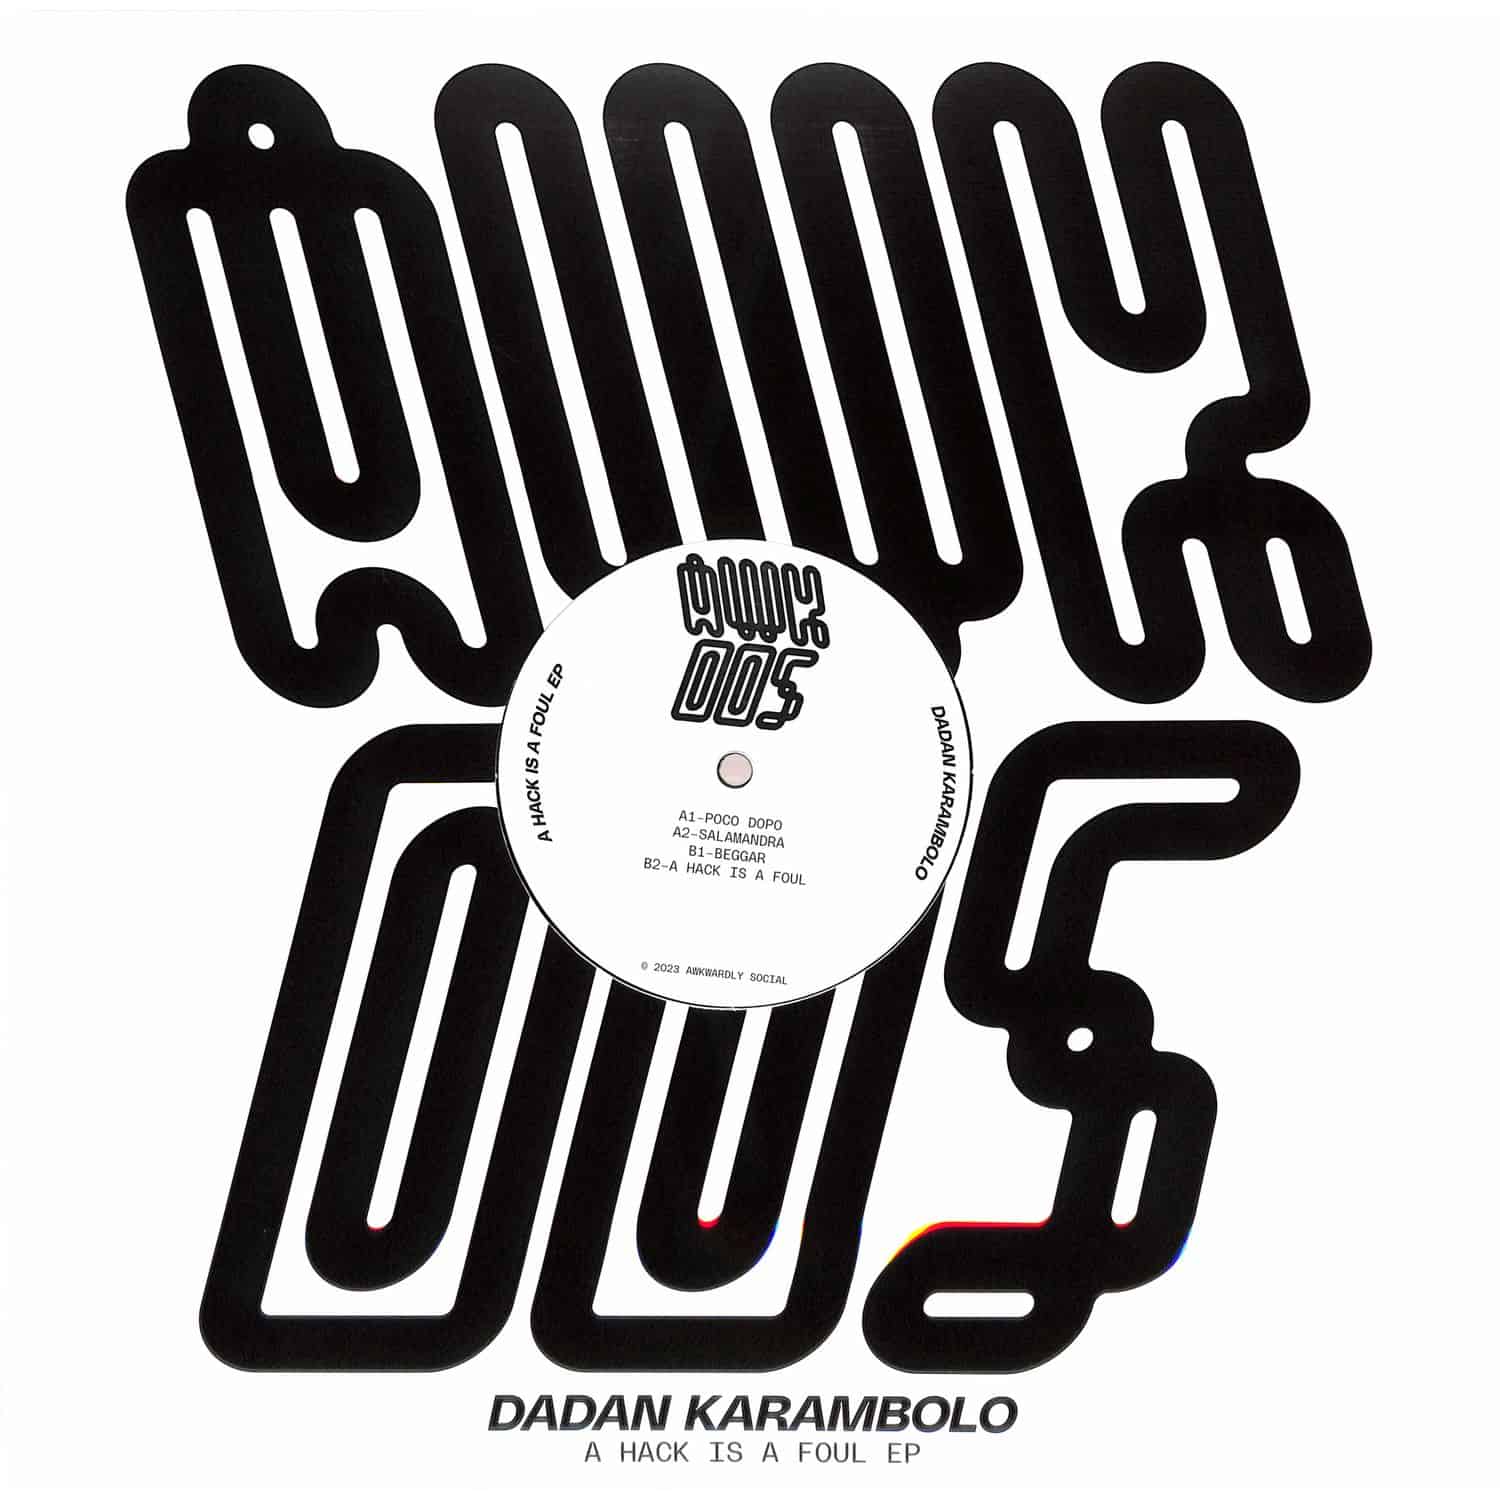 dadan karambolo - A HACK IS A FOUL EP